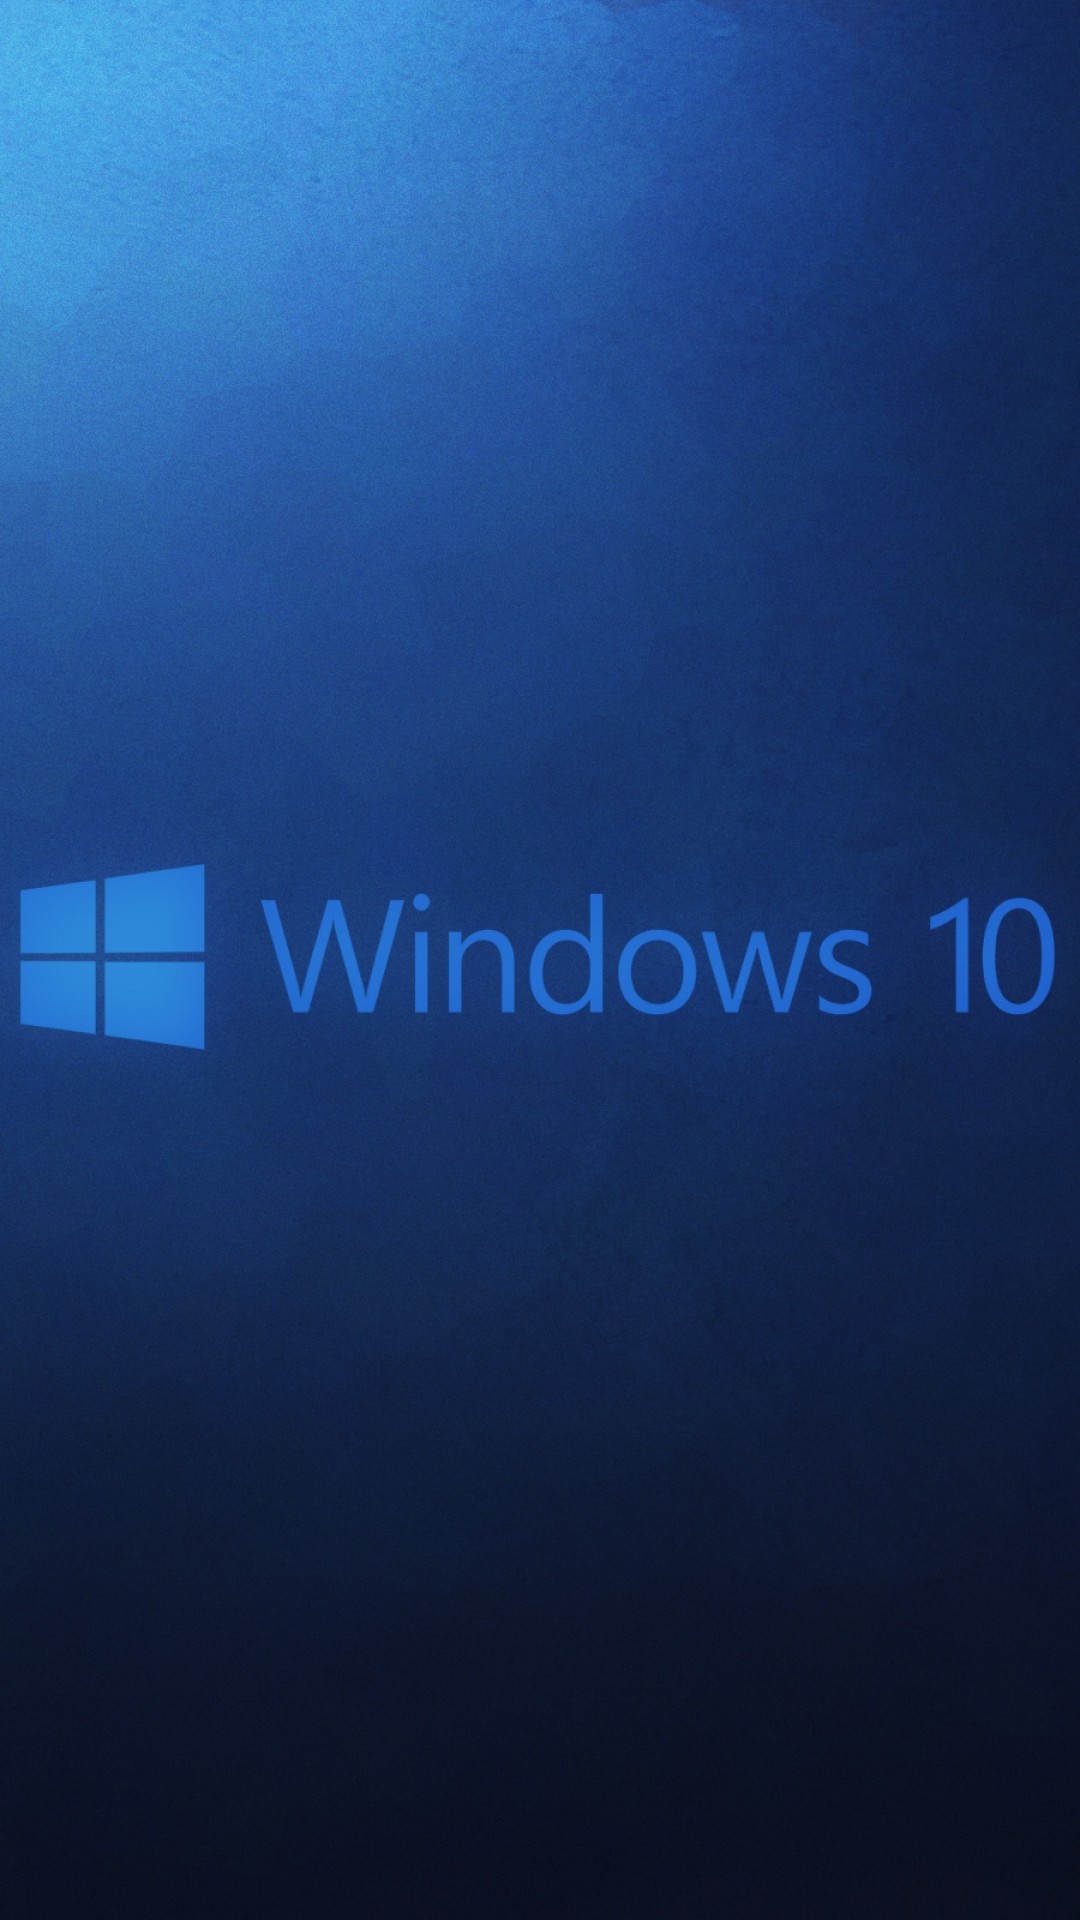 1080x1920  Wallpaper Windows 10 Операционная система Microsoft - Windows 10 Обои для мобильных устройств - 720x1280 - Загрузить HD обои - WallpaperTip